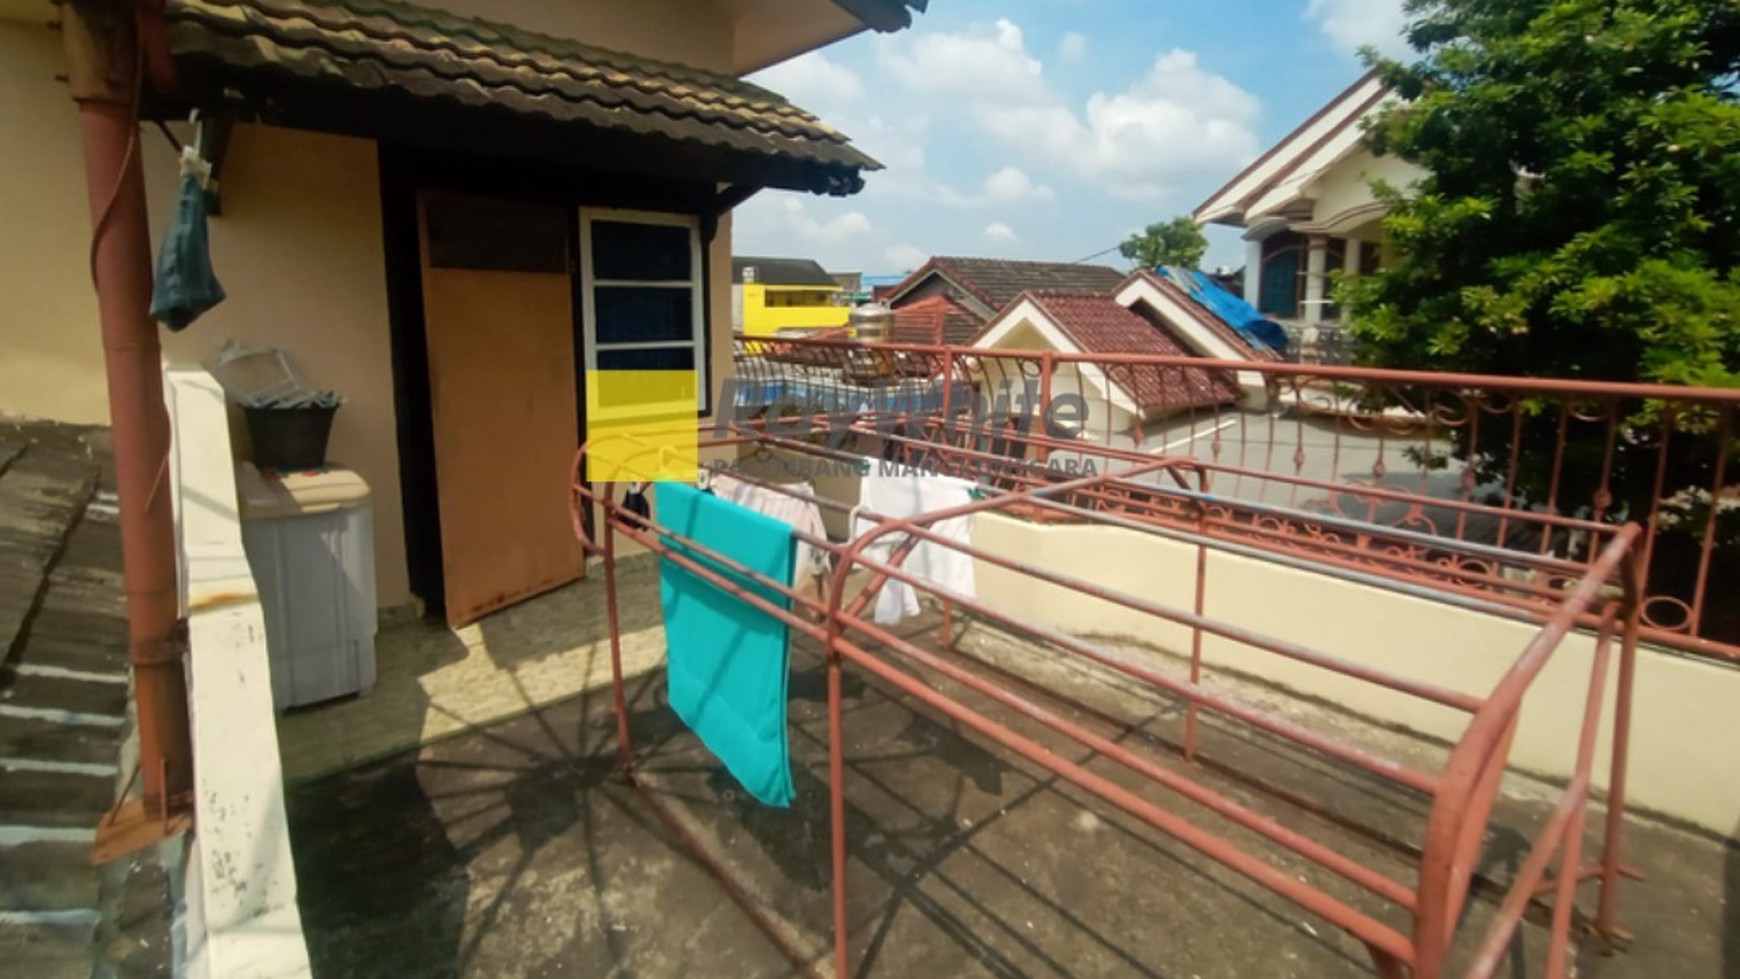 Rumah dijual di Kota Palembang